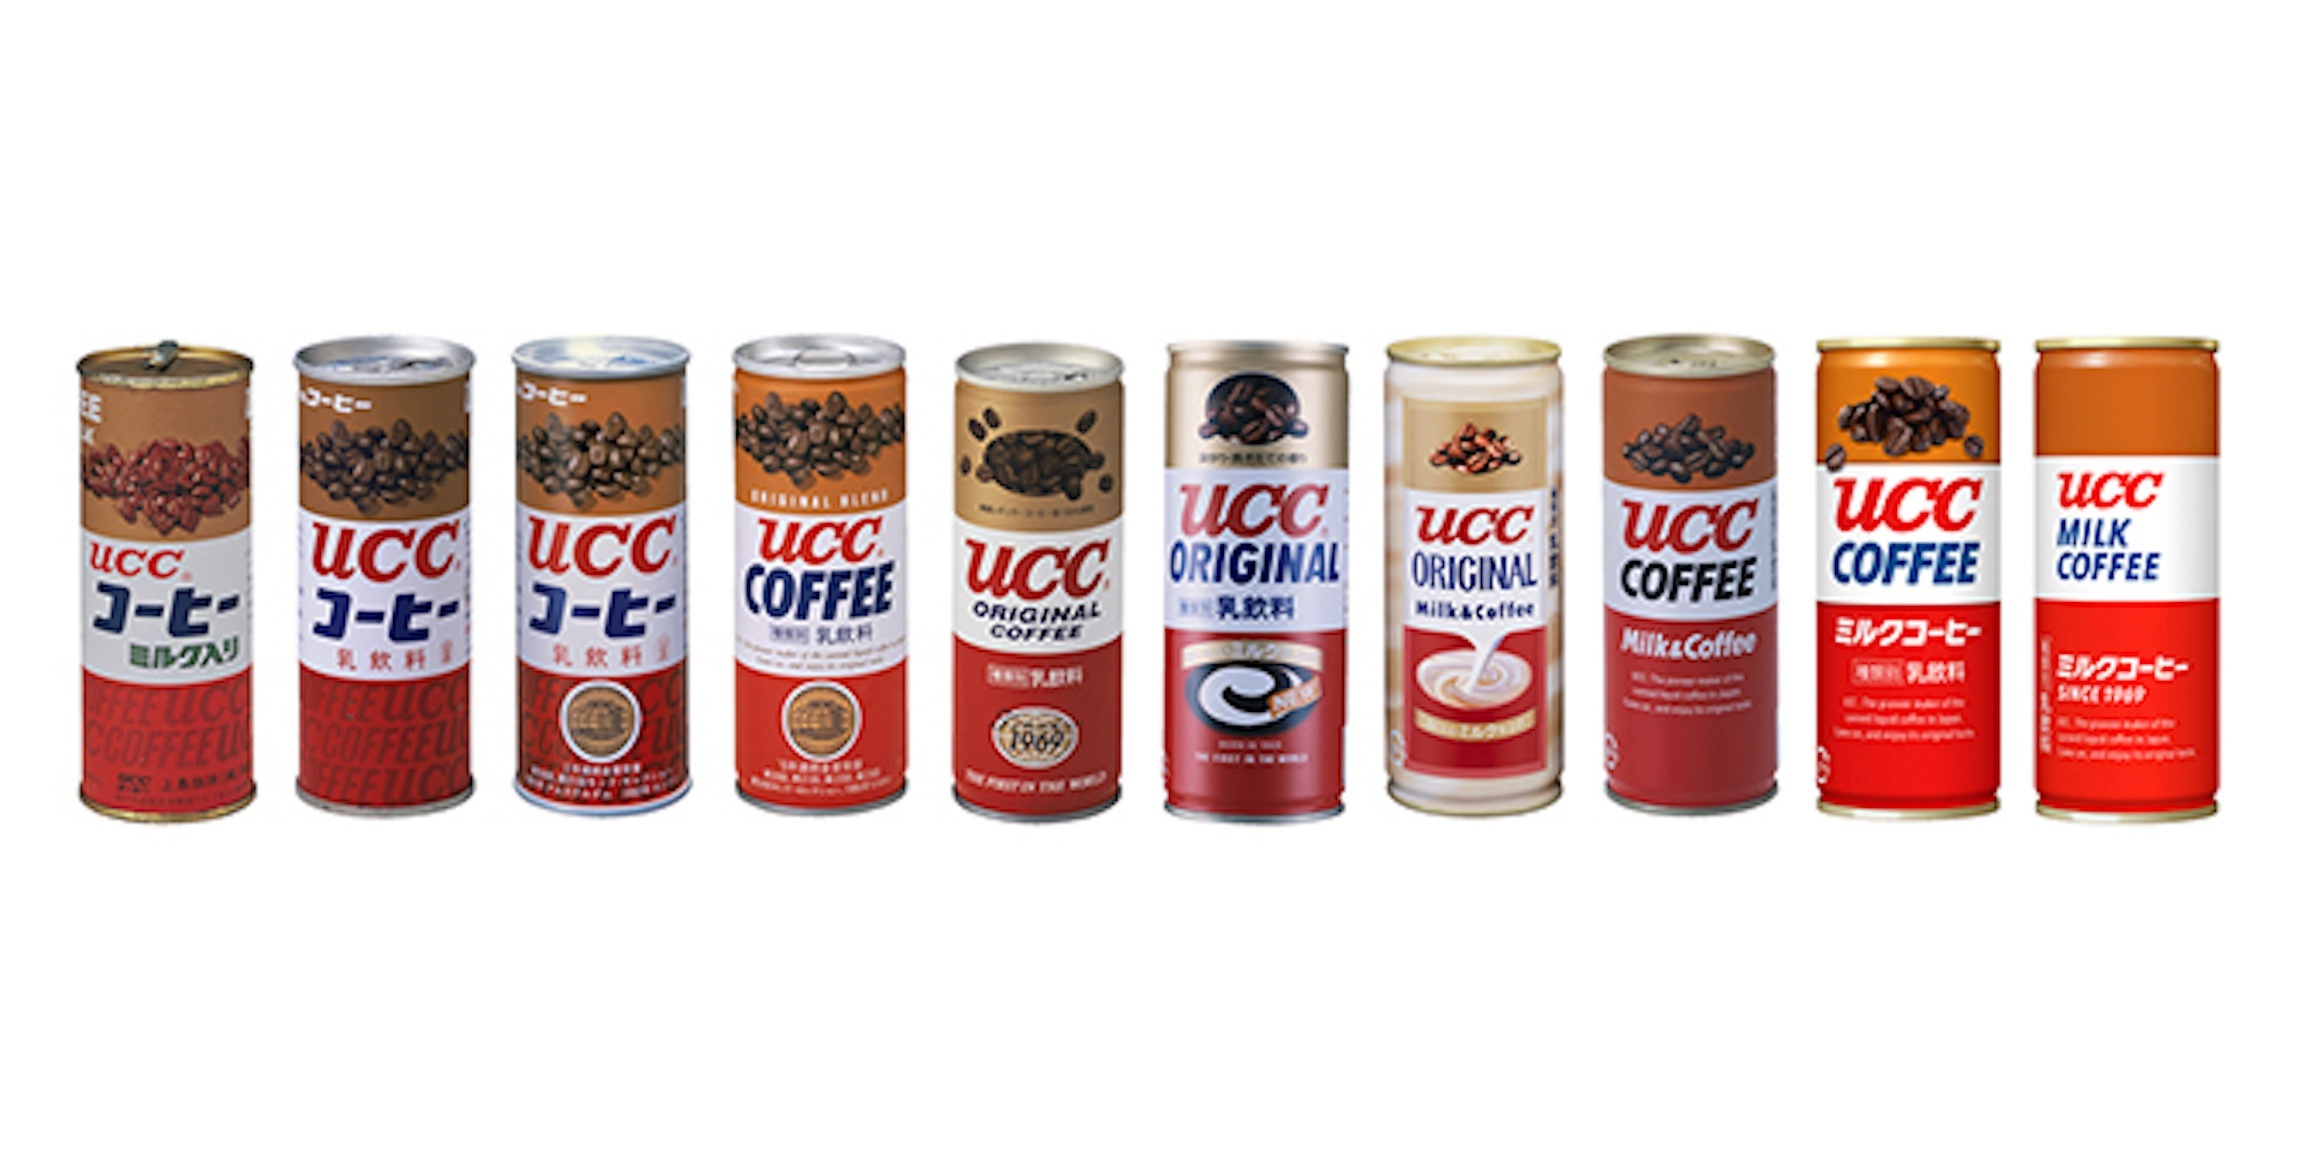 ミルクコーヒーの歴代パッケージ(初代〜10代目まで)。2019年には「茶・白・赤」の3色の商標登録。色彩のみからなる商標の登録は食品業界初だという